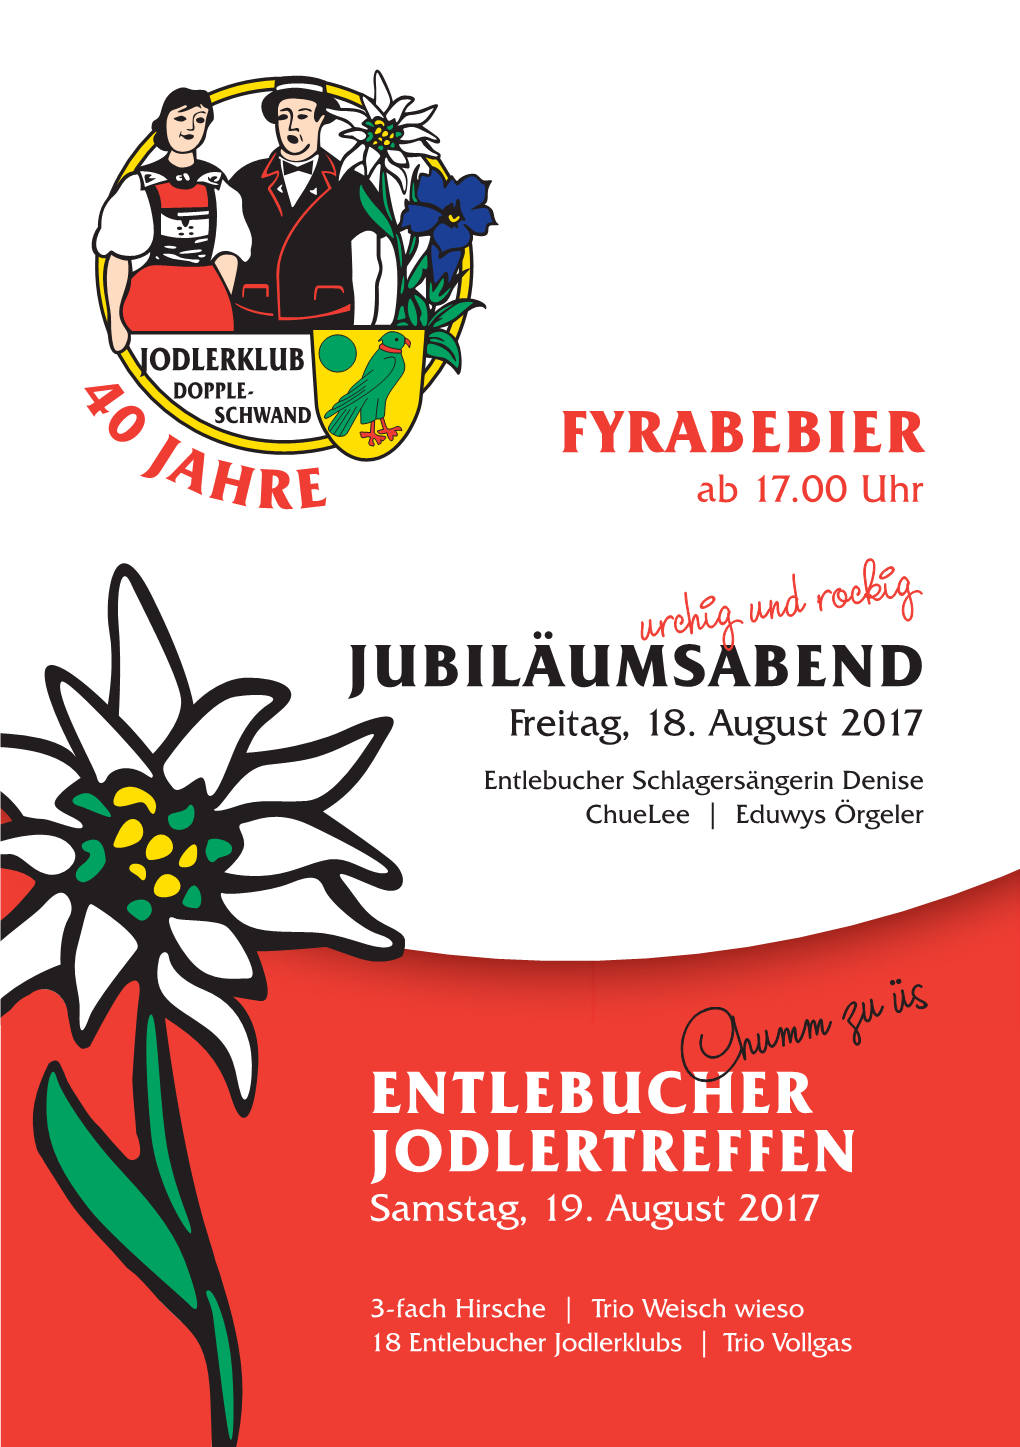 Chumm Zu Üs ENTLEBUCHER JODLERTREFFEN JODLERKLUB 4 1 8./19